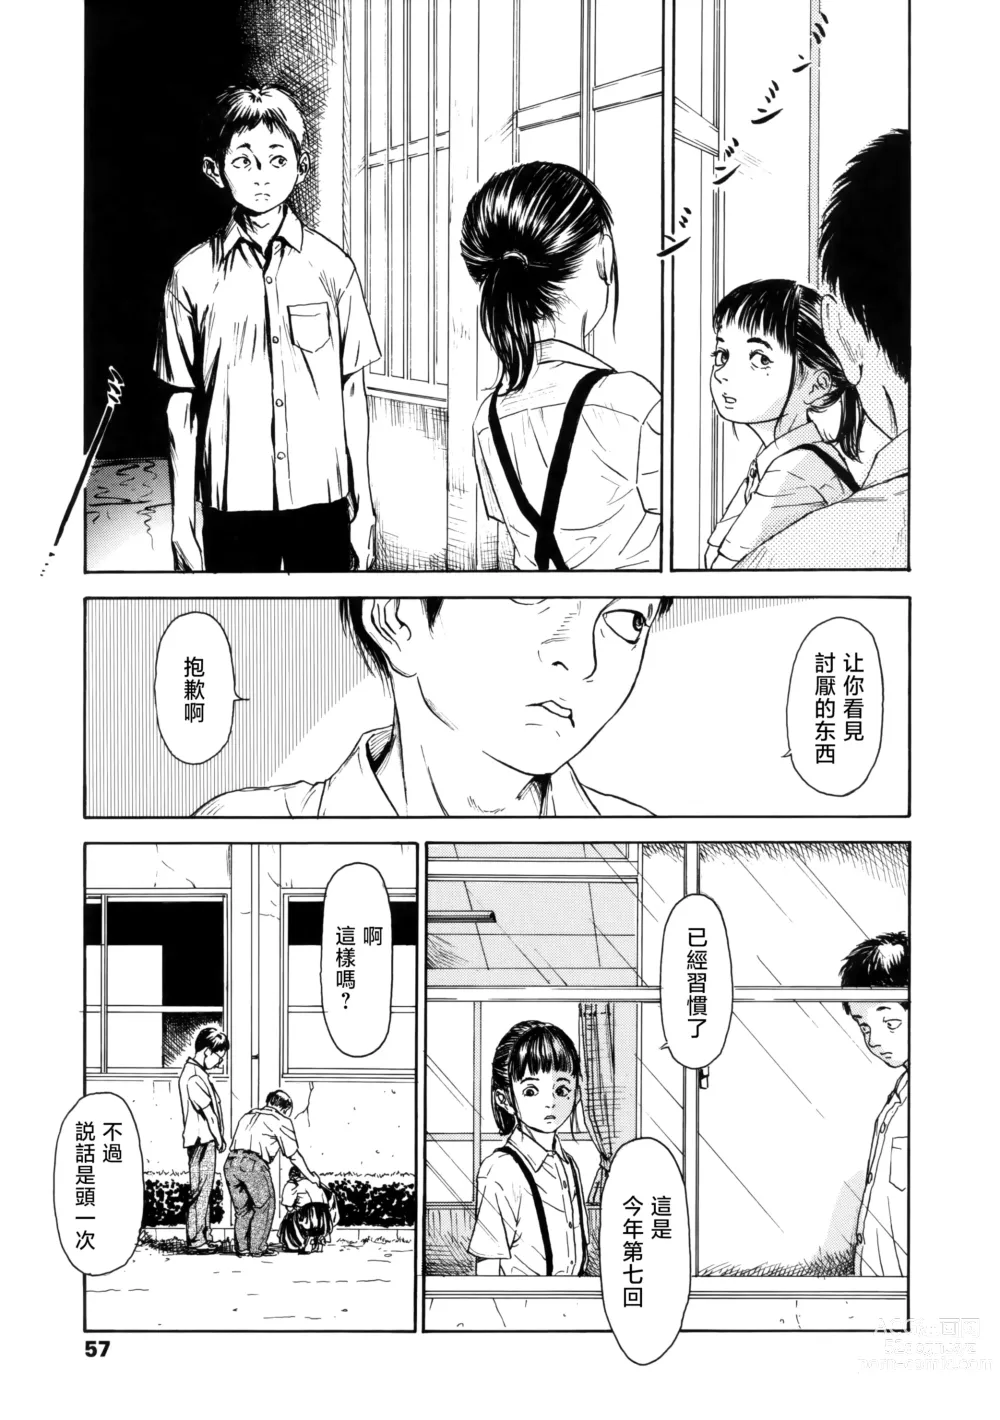 Page 5 of manga Hanako to Tarou no Natsuyasumi